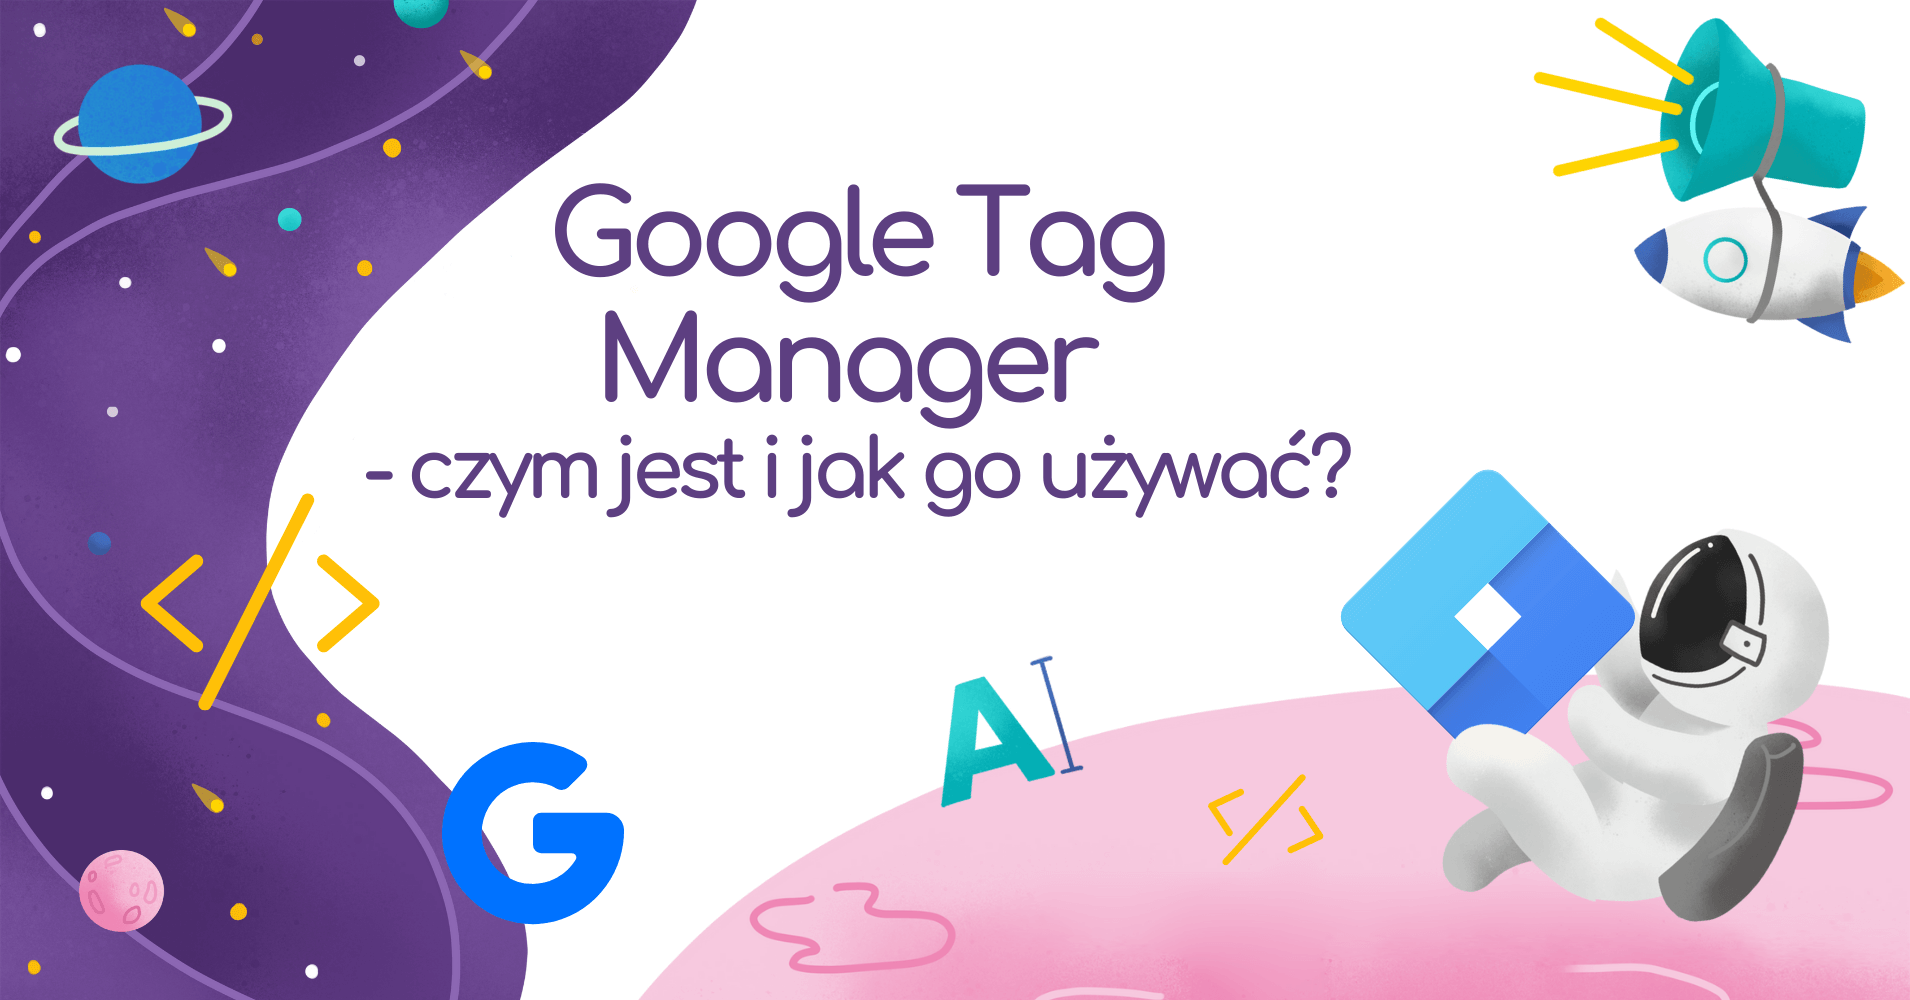 Czym jest Google Tag Manager i jak go używać?